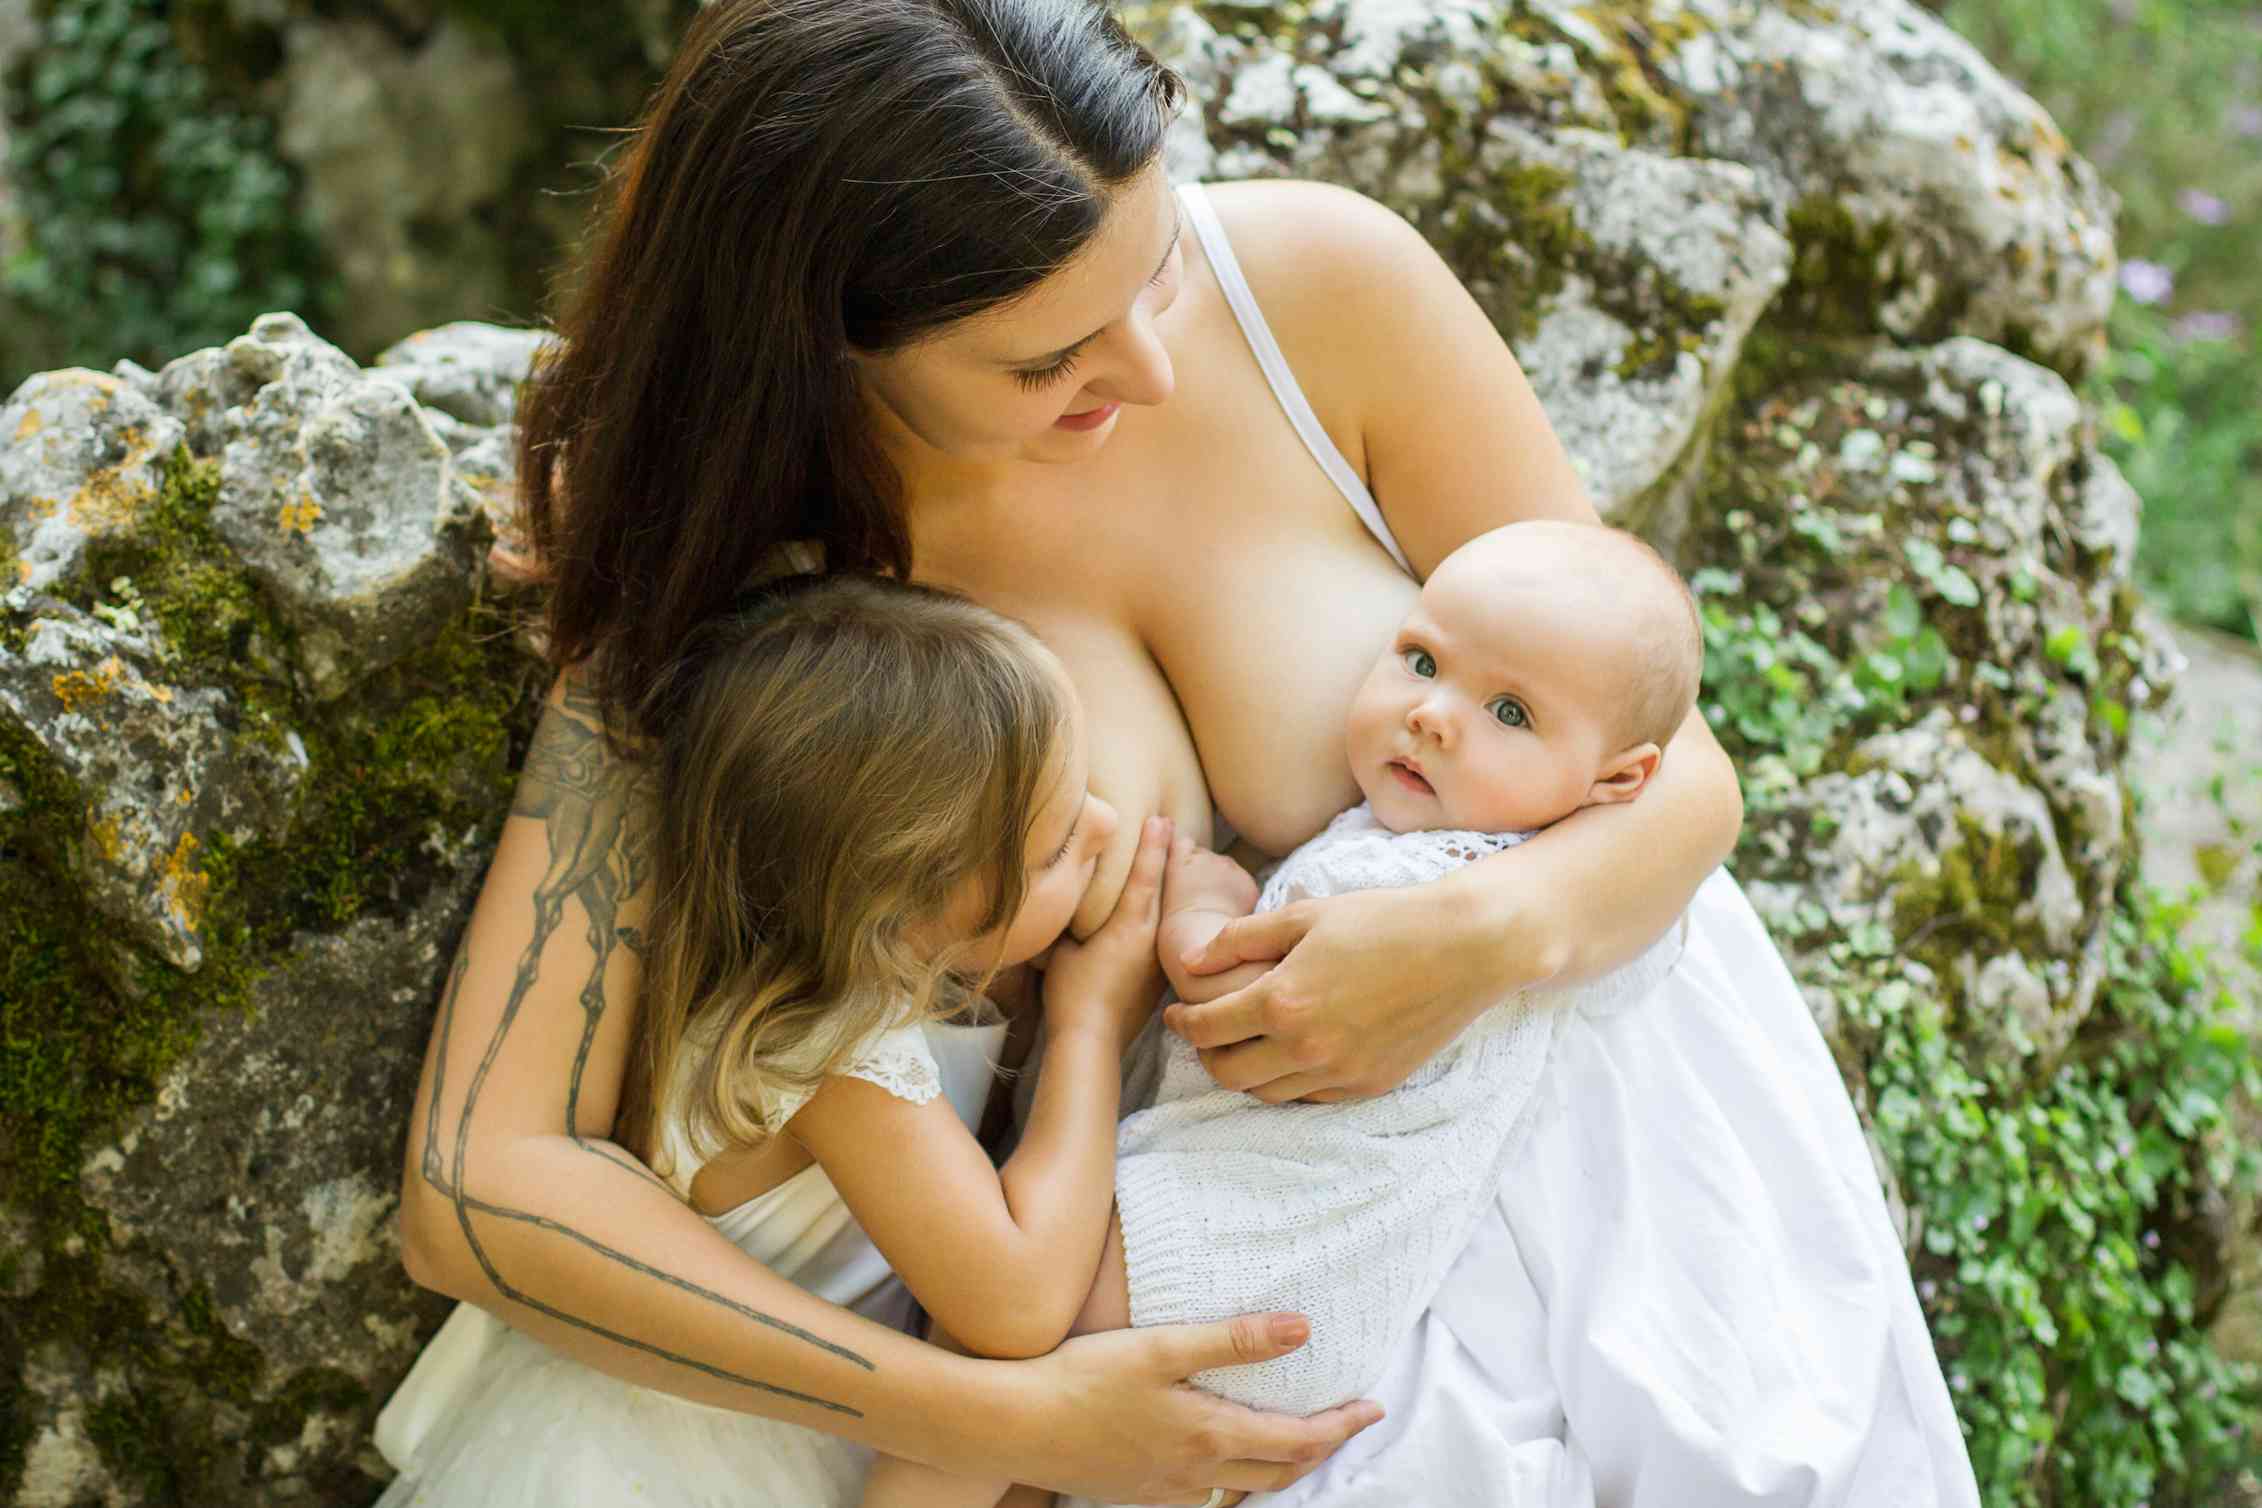 Бесплатное видео красивых мамочек